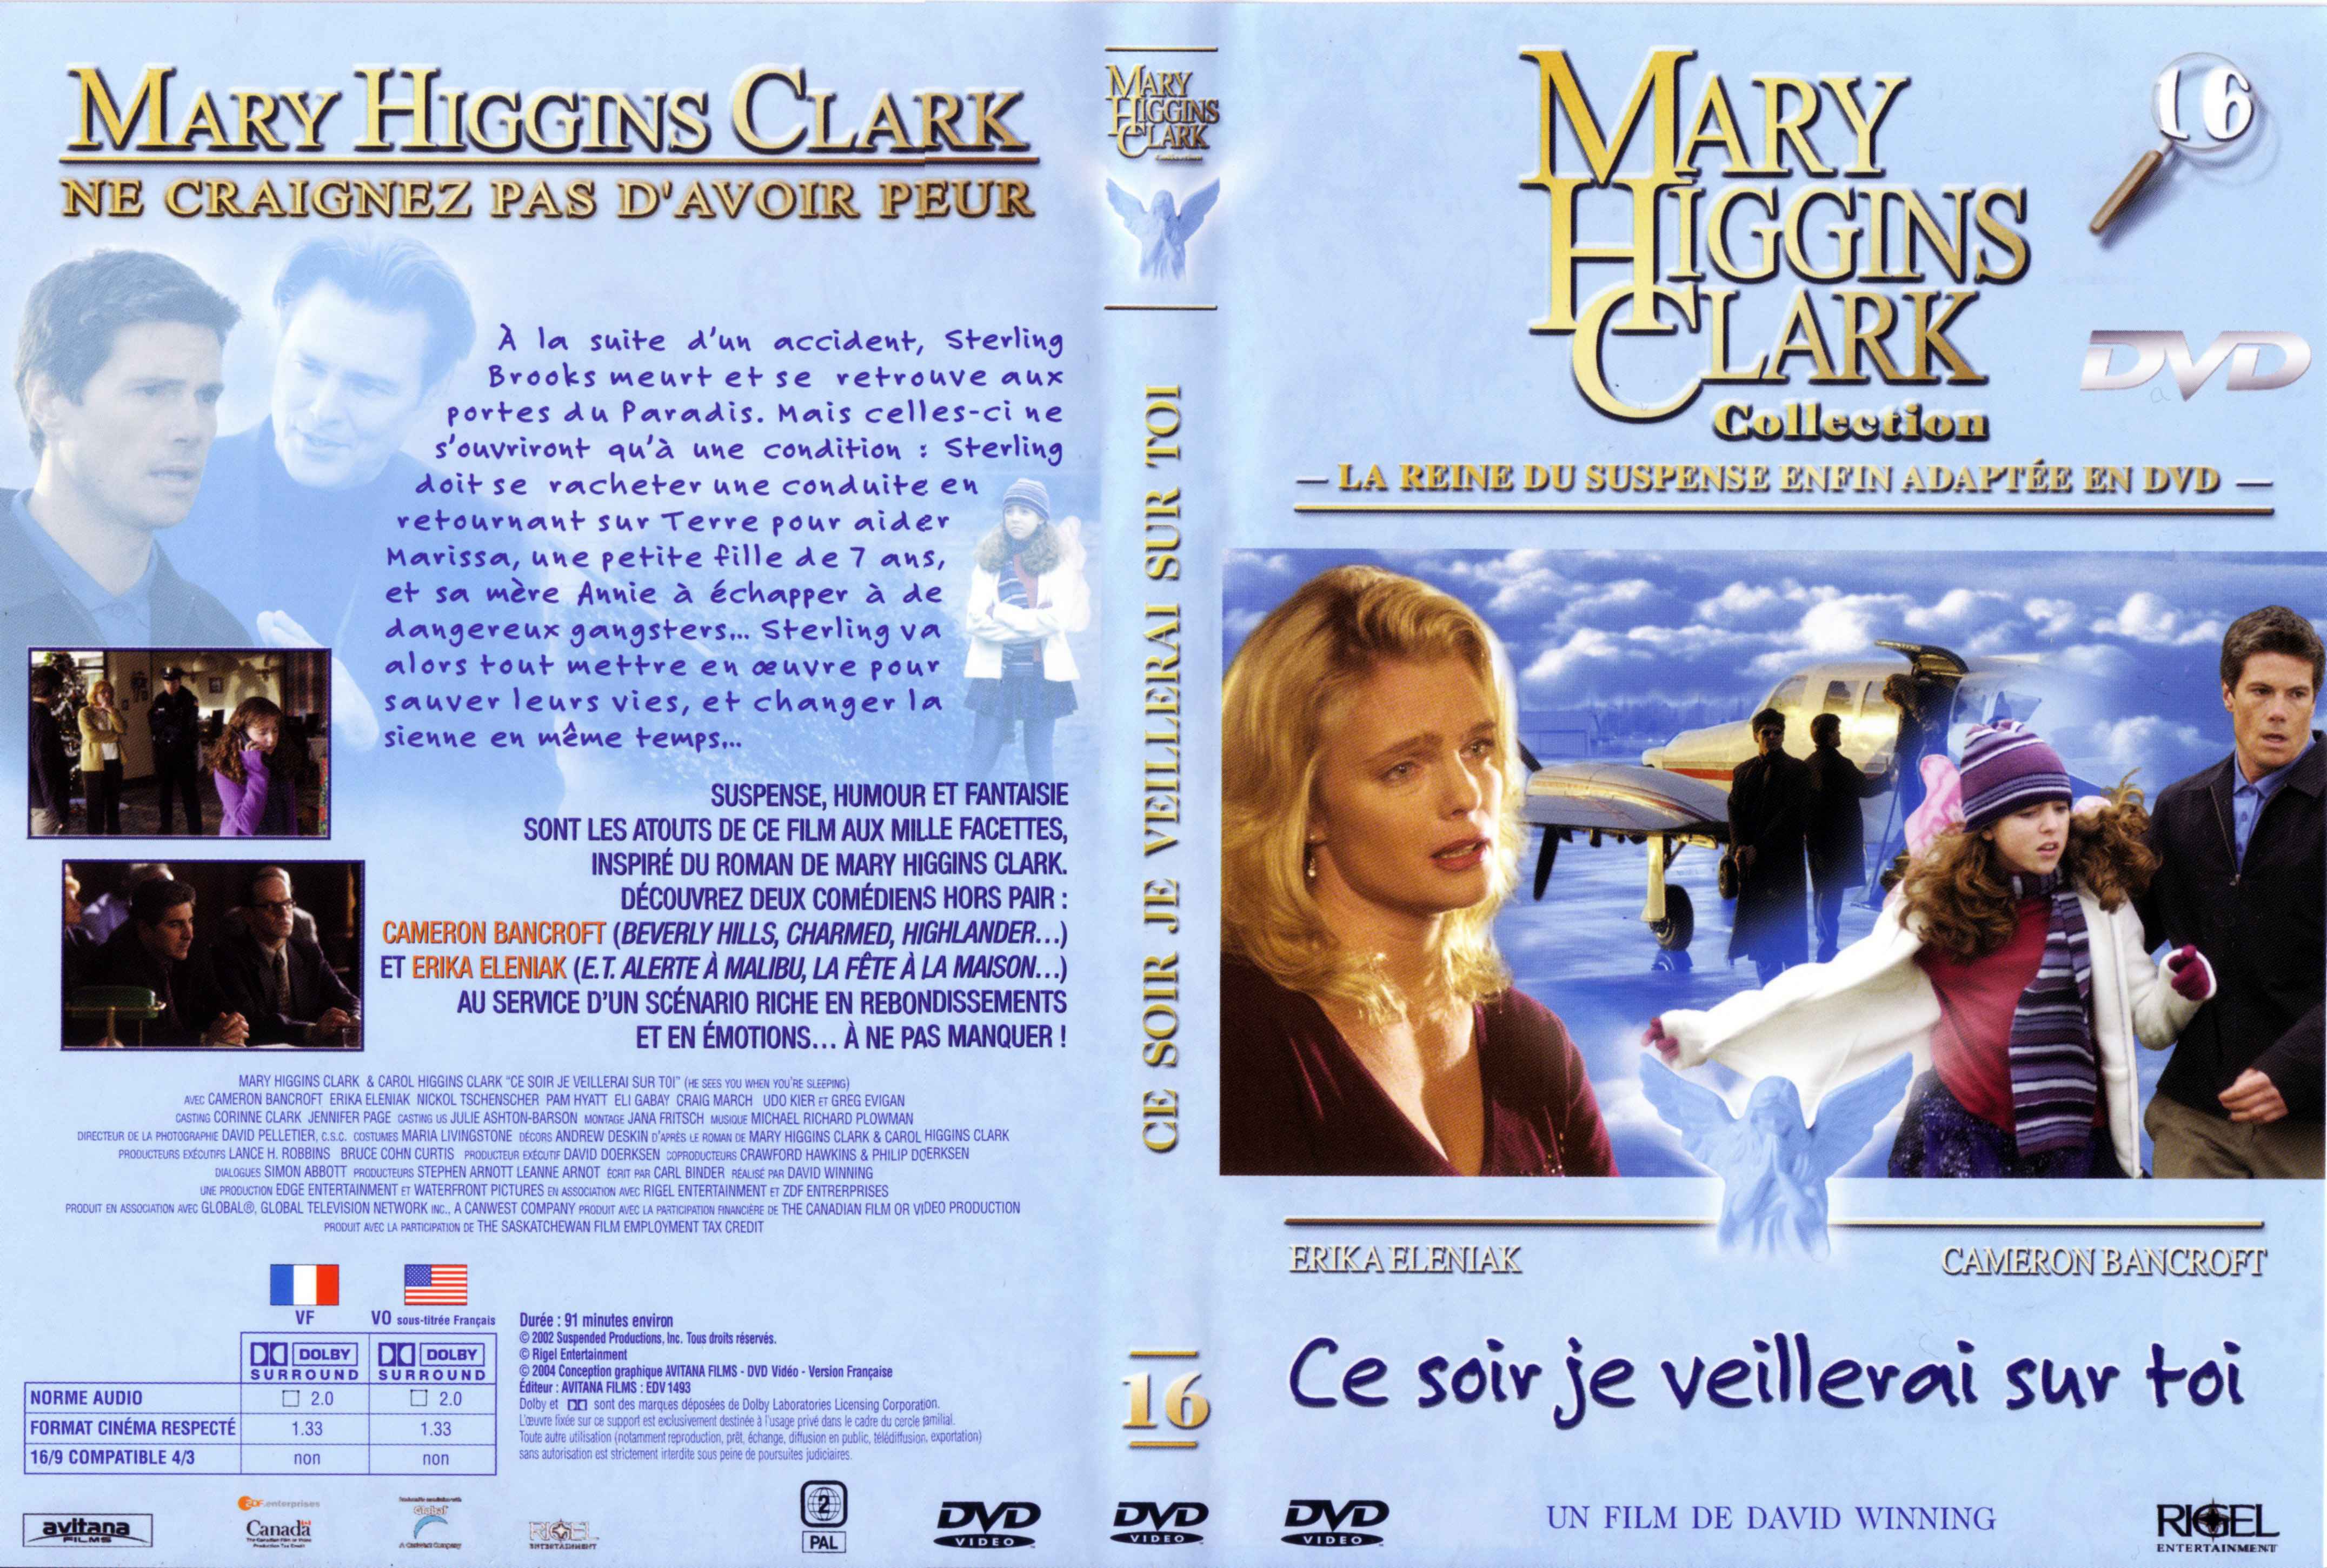 Jaquette DVD Mary Higgins Clark vol 16 - Ce soir je veillerai sur toi